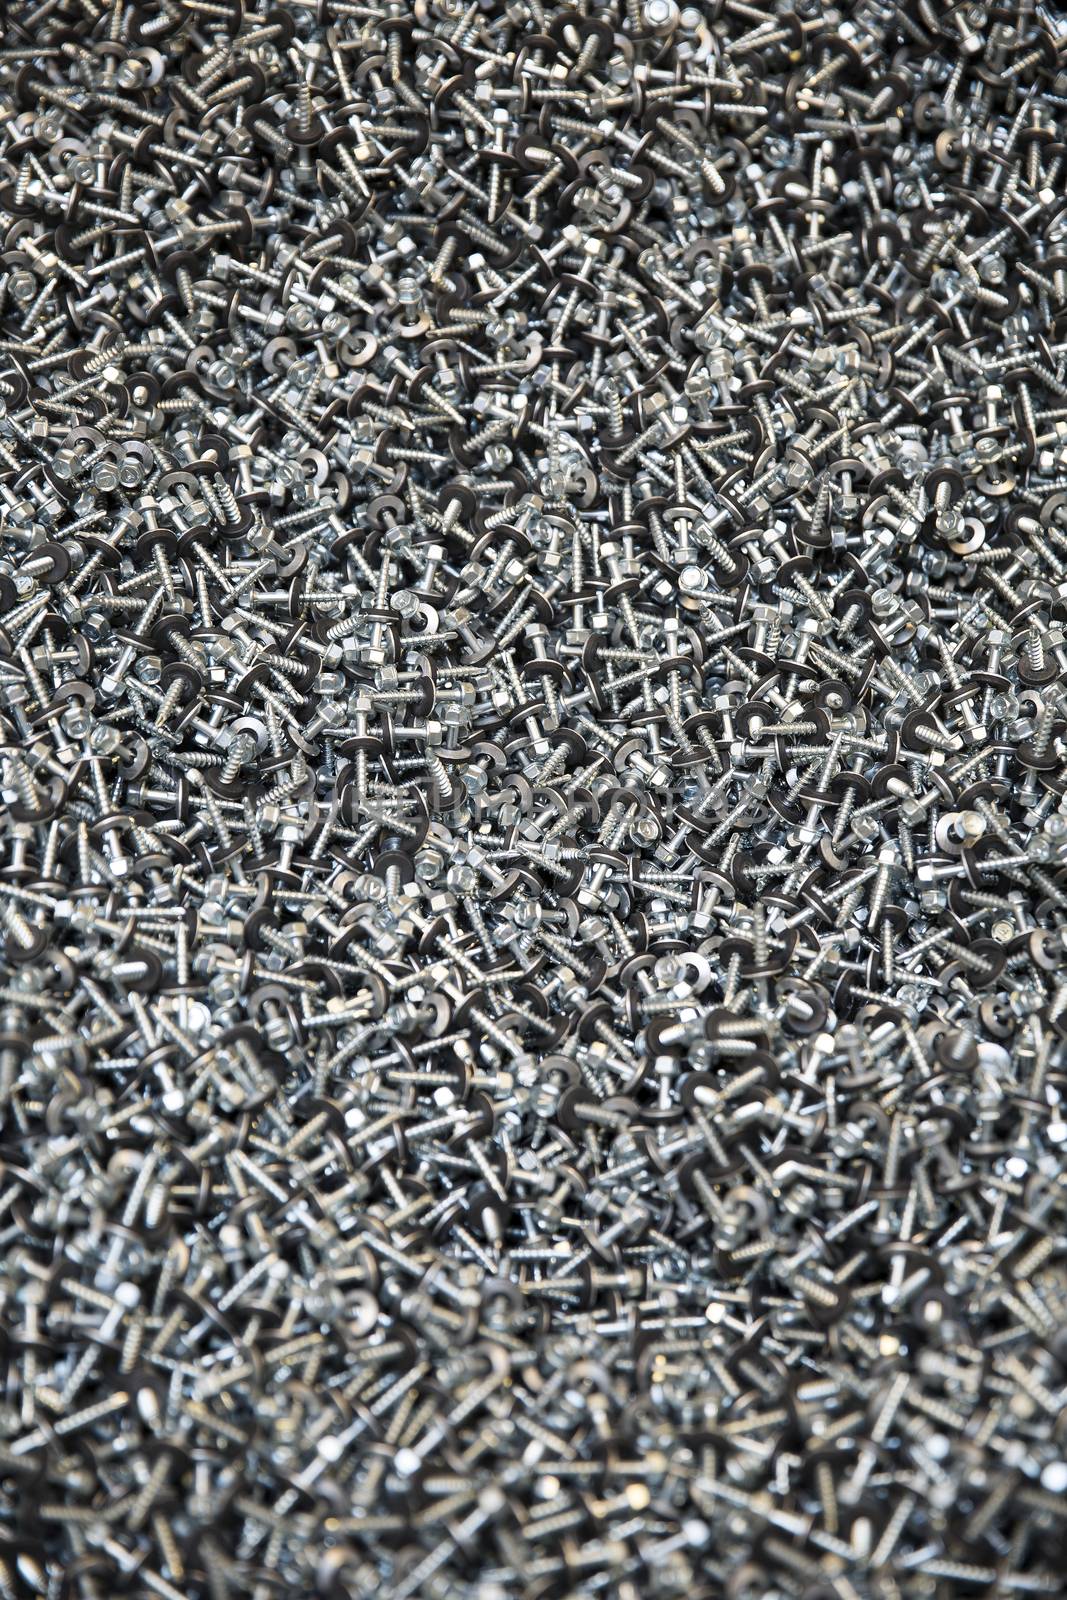 Large group of screws full frame